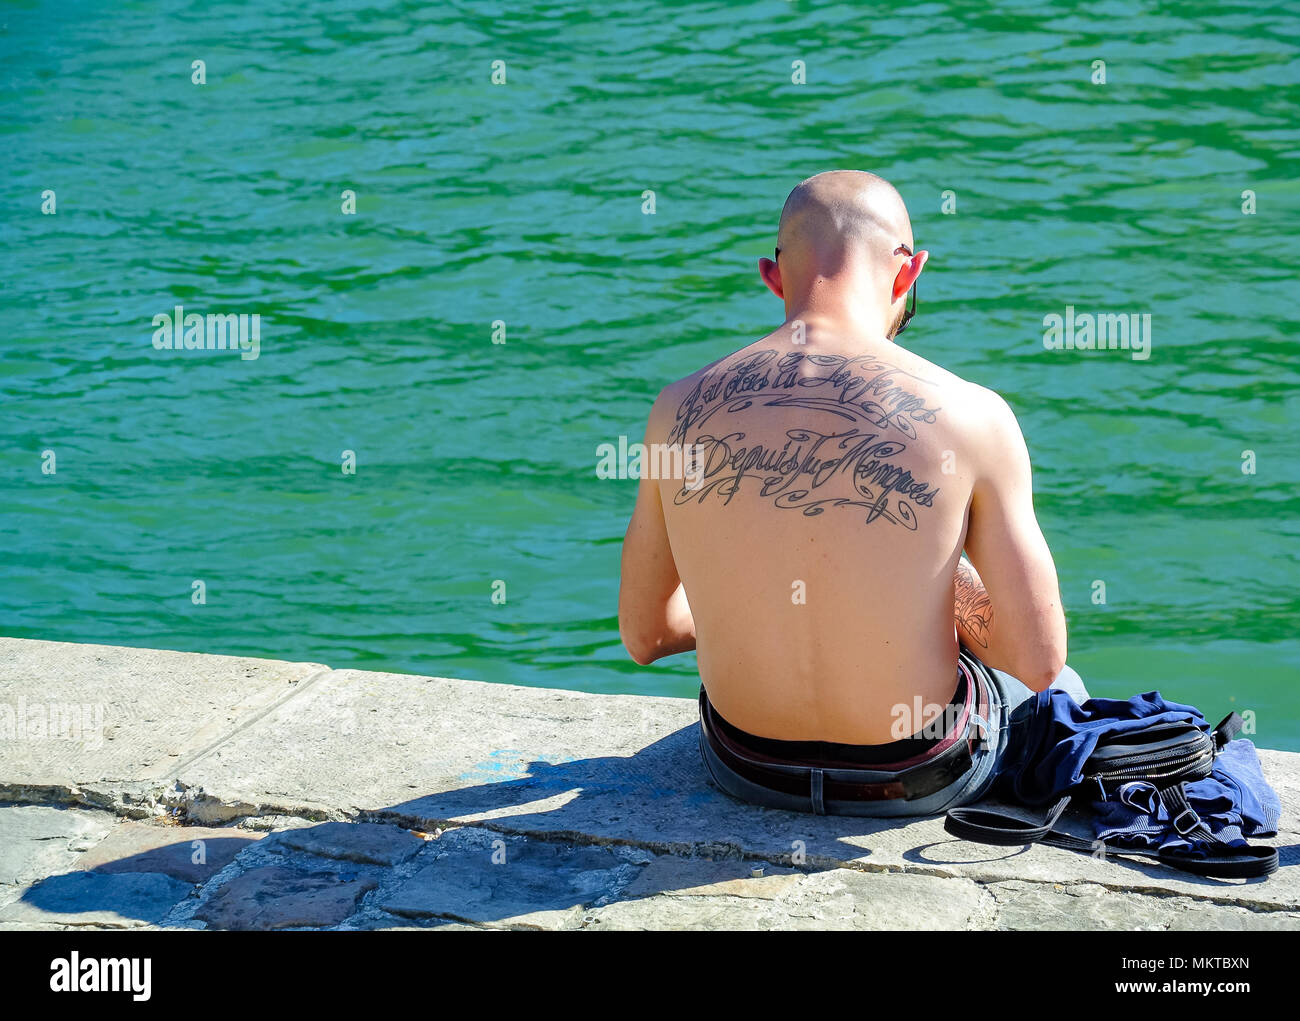 Caucasian man with tattoos sur son dos , seine, Paris, France Banque D'Images